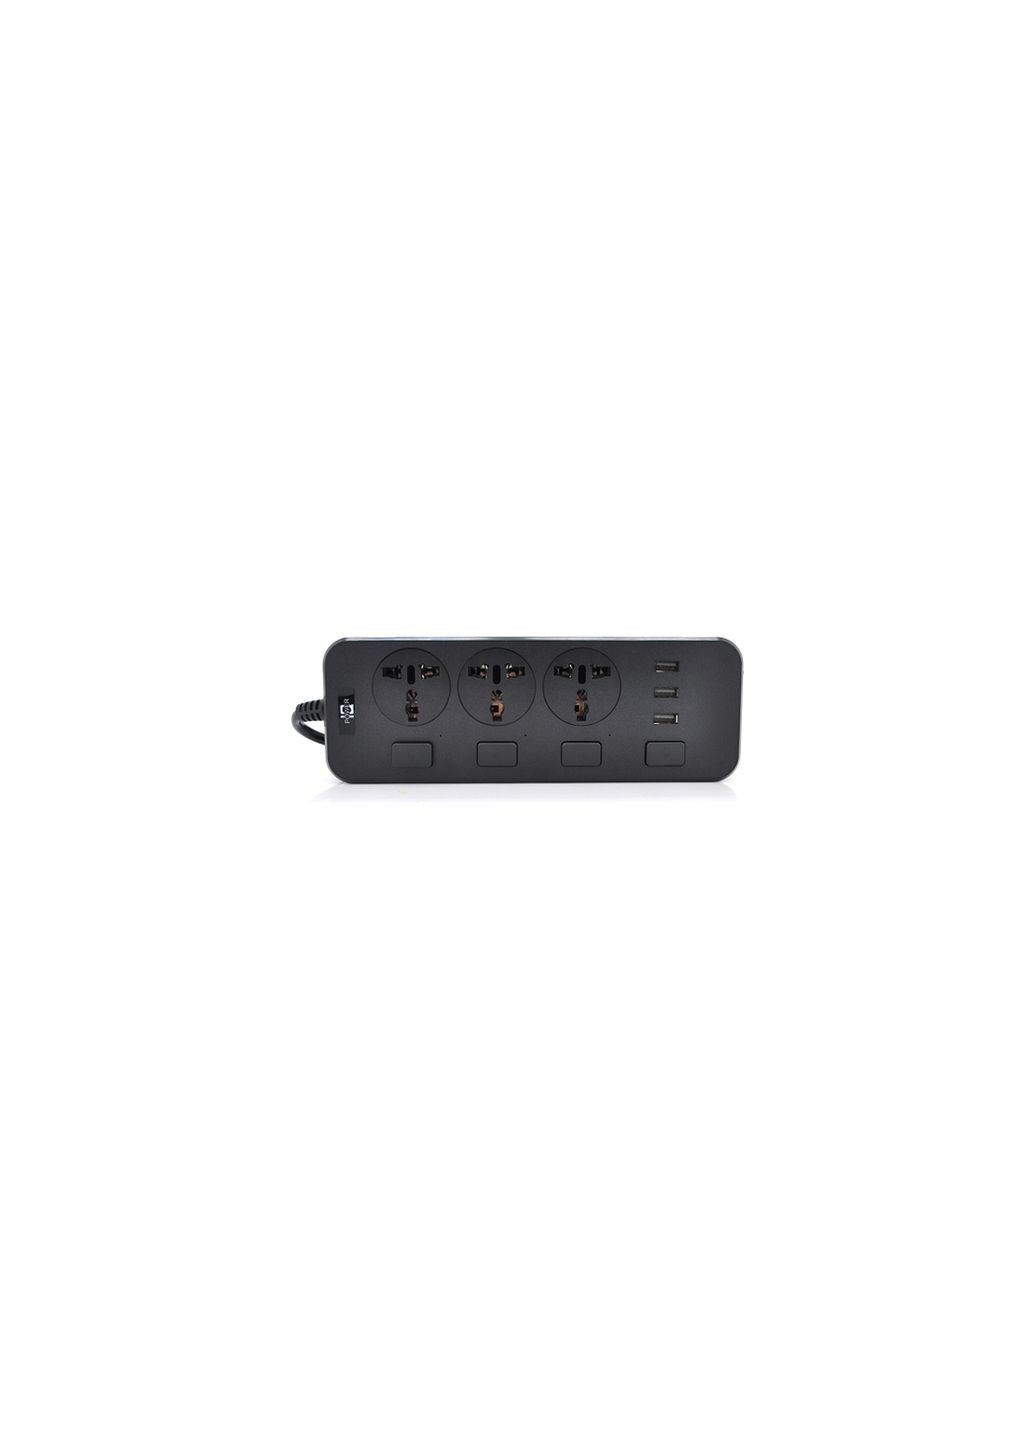 Мережевий фільтр живлення TВТ14, 3роз, 3*USB Black (ТВ-Т14-Black) Voltronic tв-т14, 3роз, 3*usb black (280930857)